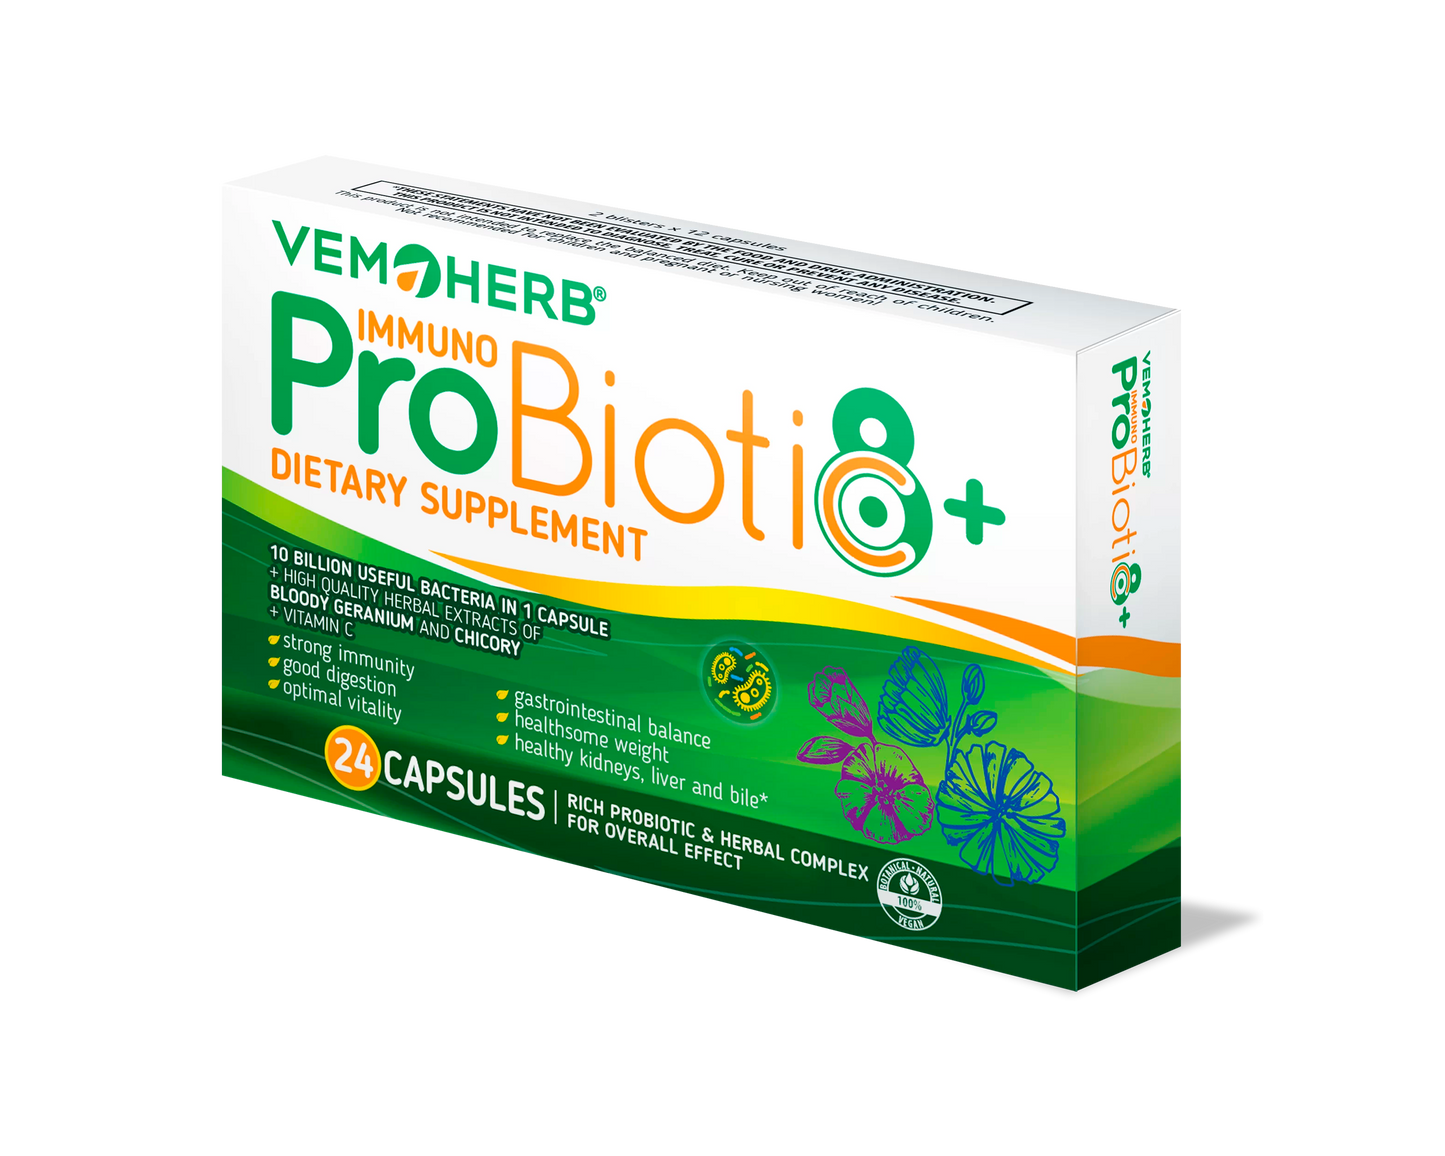 ProBiotiC 8 plus Immuno (+Vit. C), 24 capsules